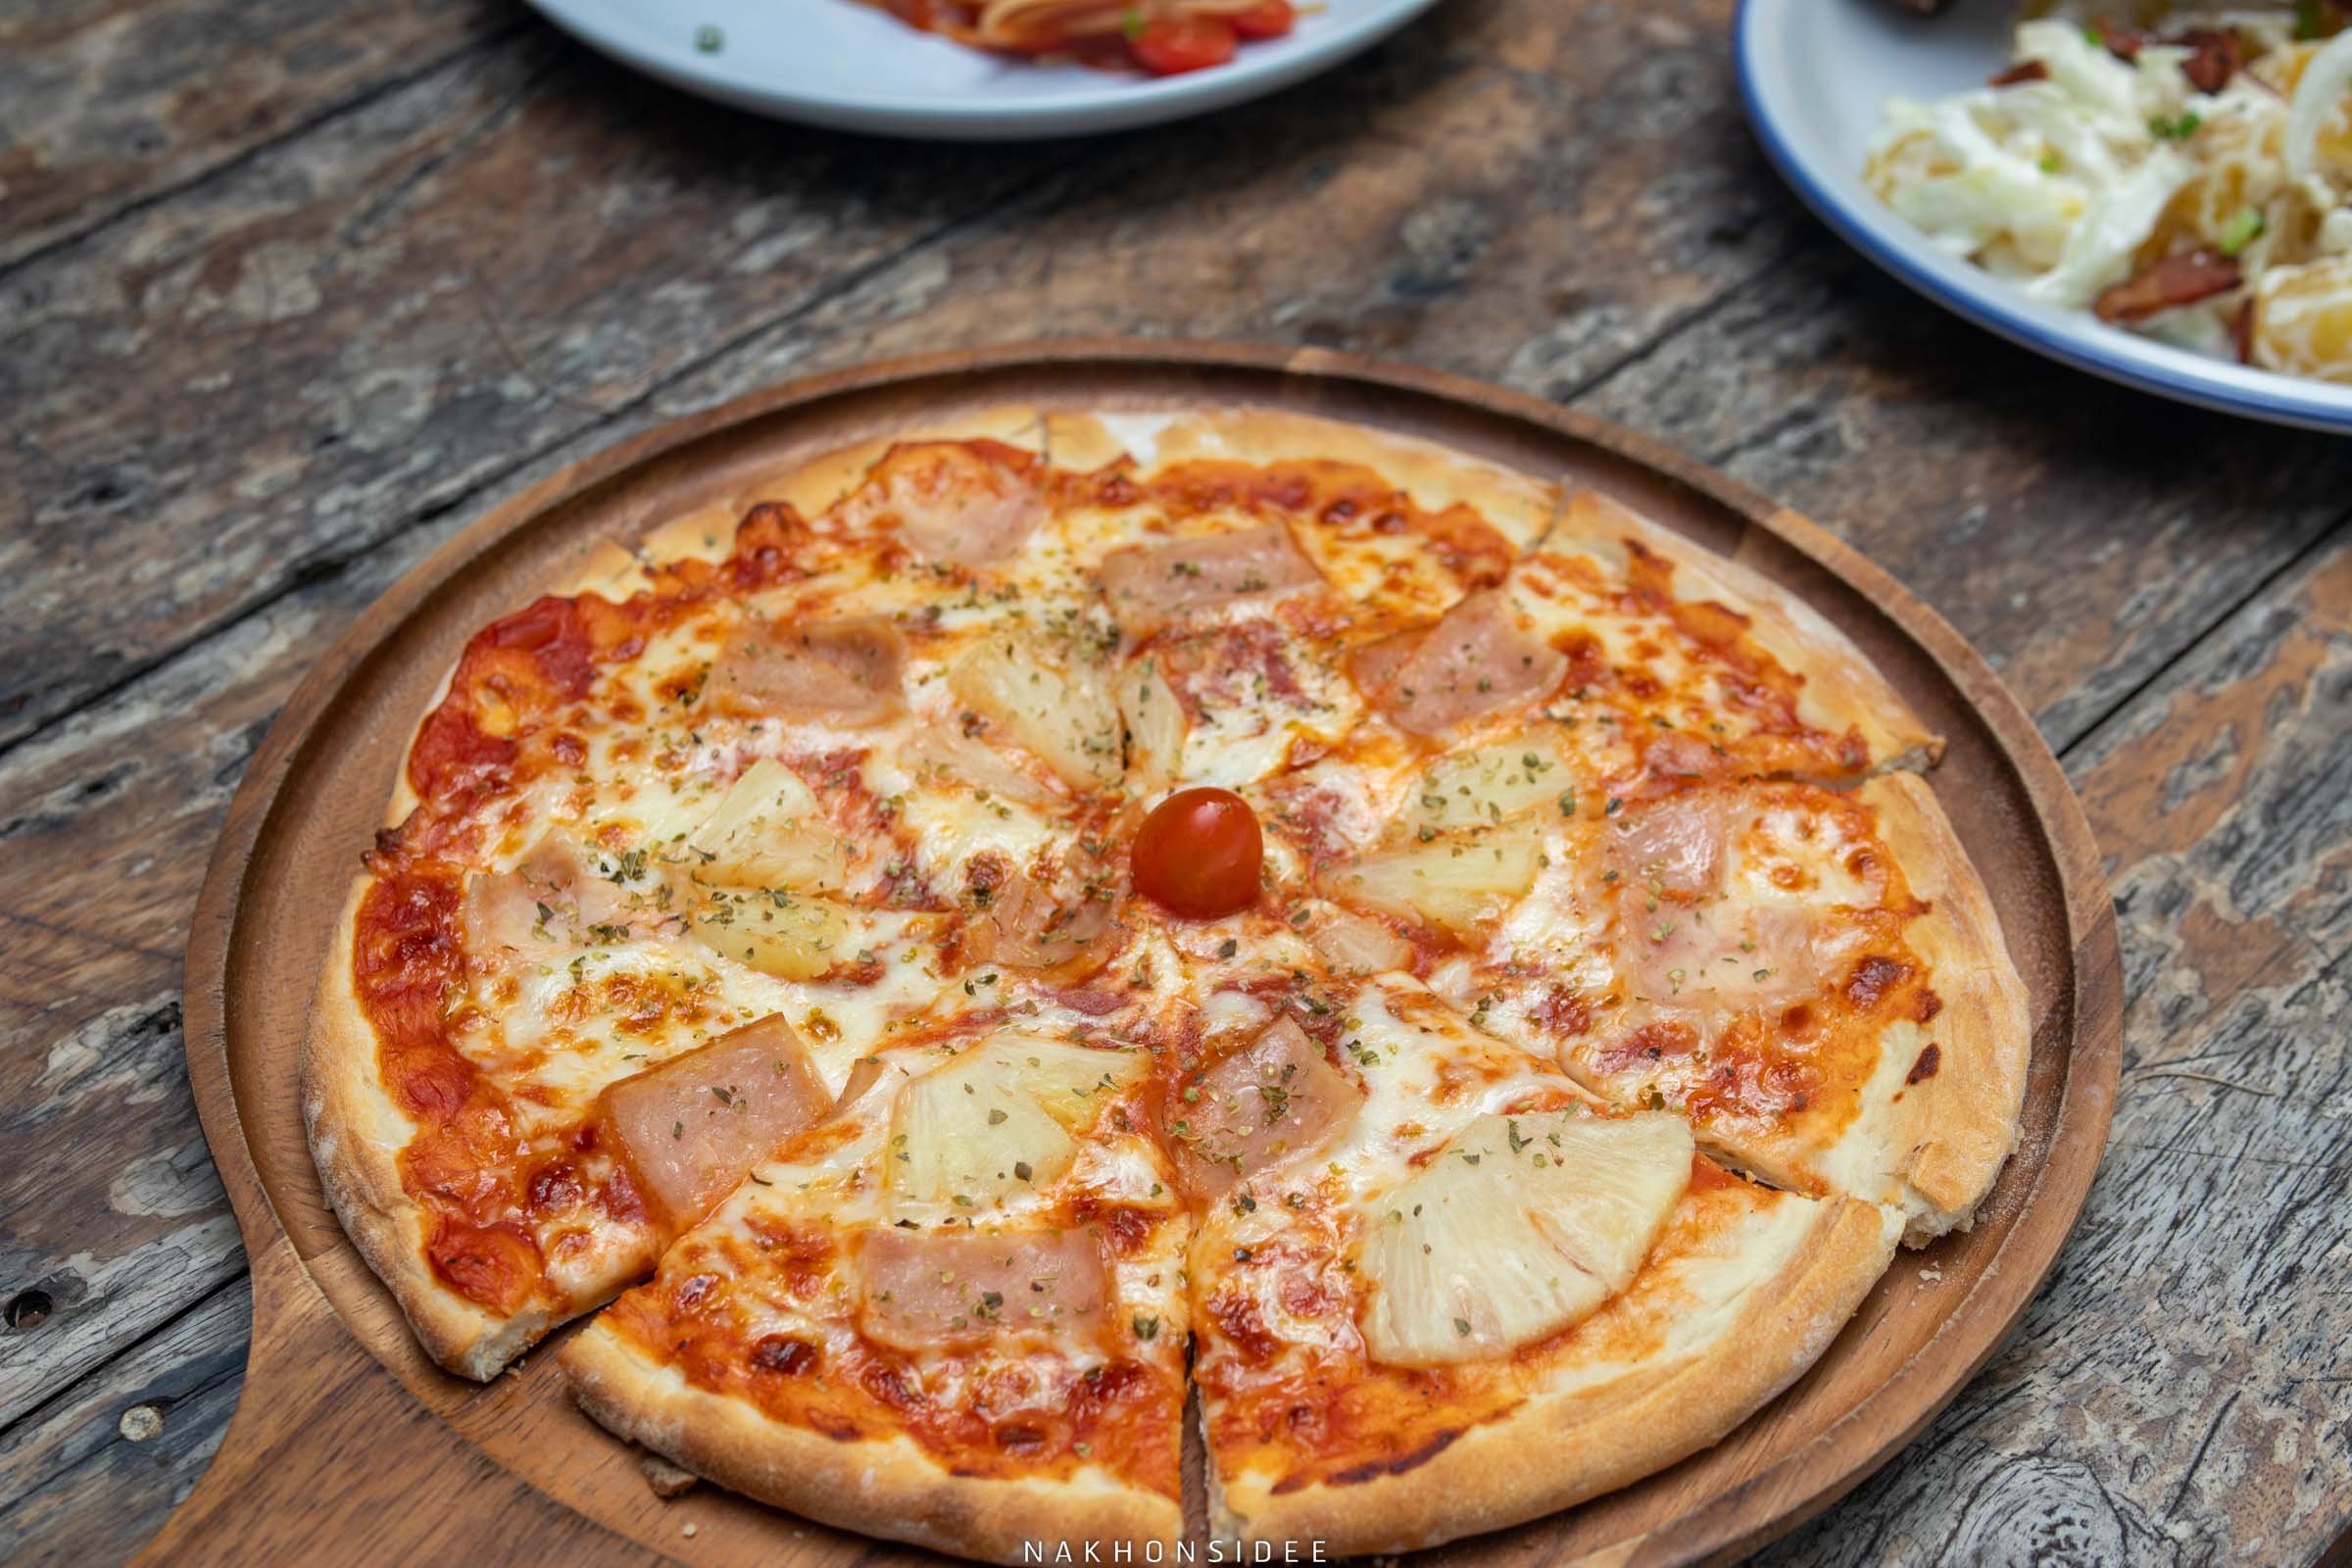  พิซซ่าก็มีน้า-Pizza-Hawaiian-พิซซ่าฮาวายเอี้ยน อิสระบีชรีสอร์ท,ที่พักสิชล,ที่พักใกล้วัดเจดีย์,SASABEACH,SAABSAAB